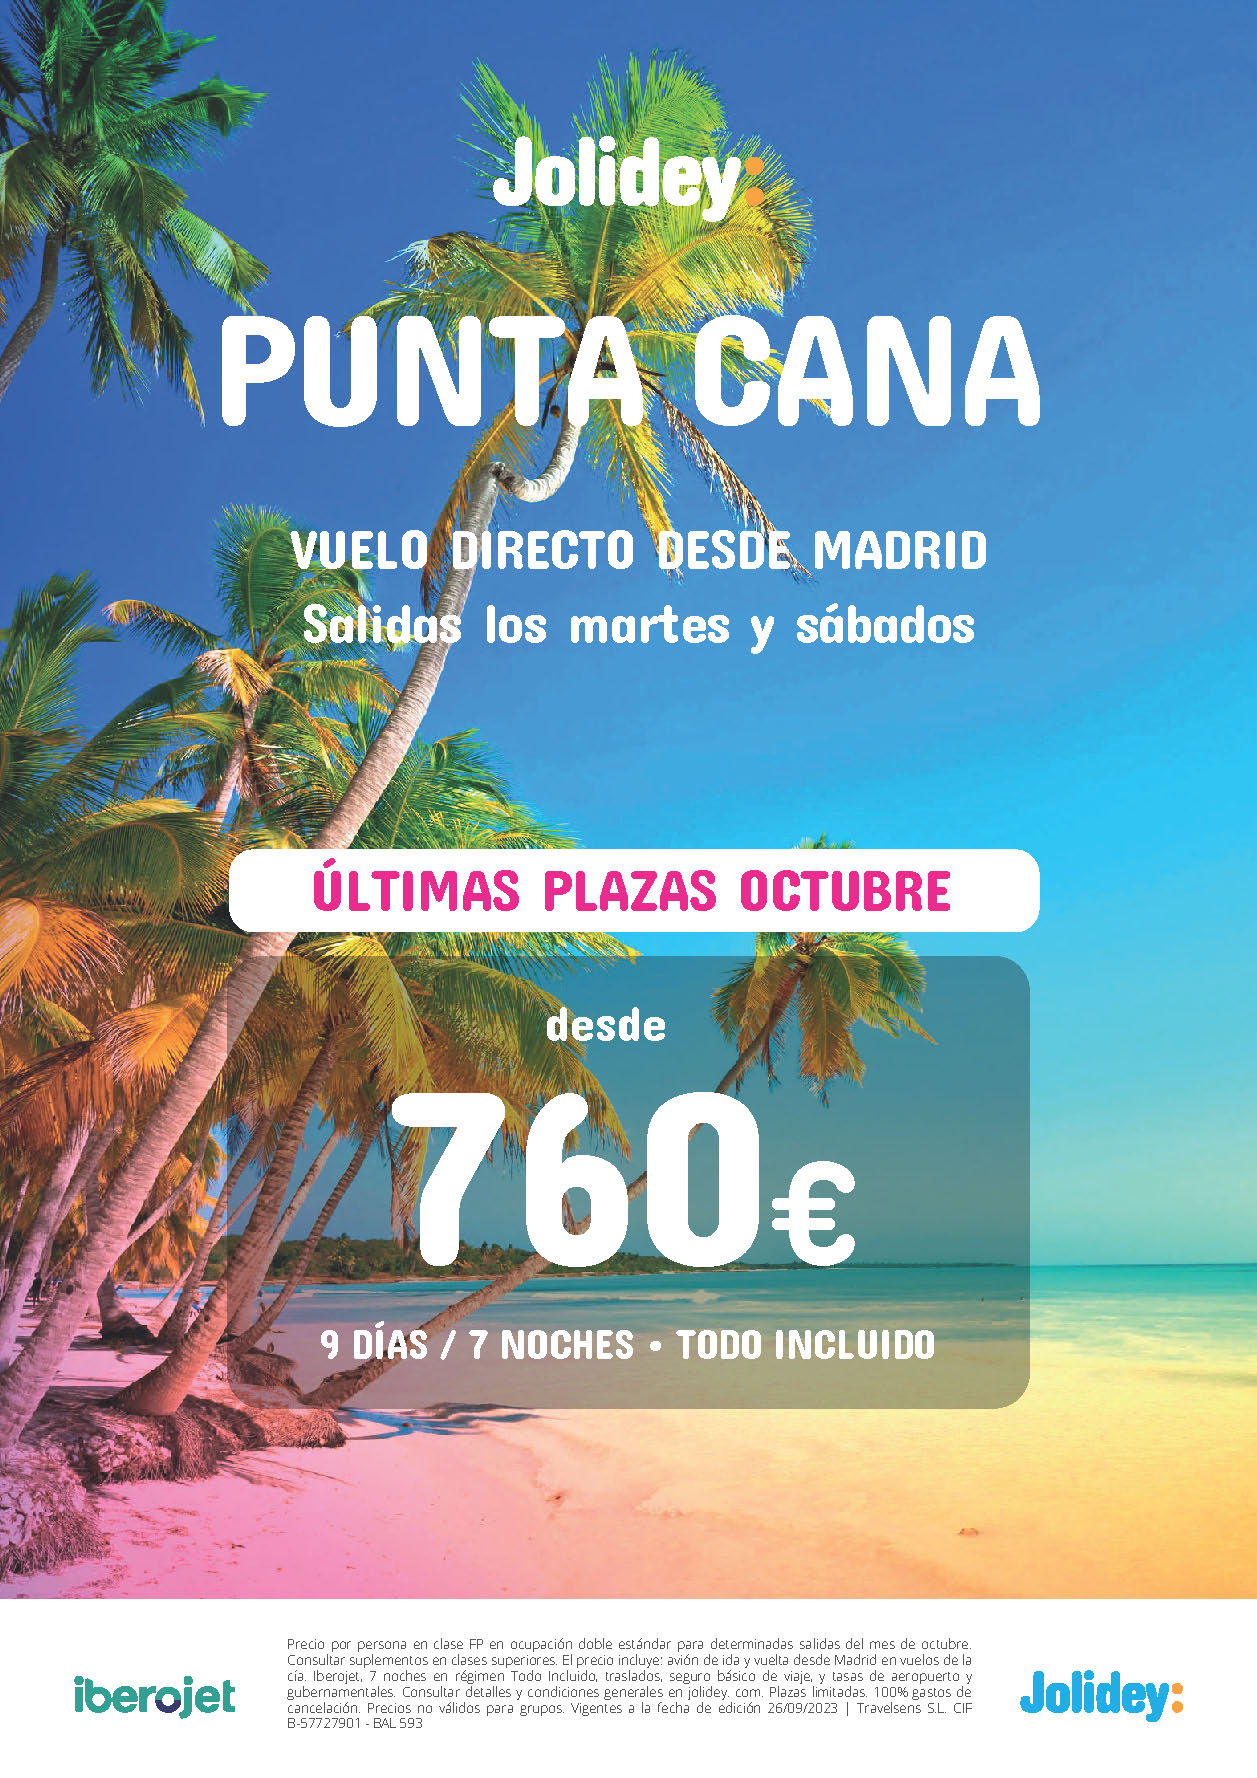 Oferta Jolidey Ultimas Plazas Octubre 2023 Estancia en Punta Cana Republica Dominicana 9 dias Todo Incluido salidas en vuelo directo desde Madrid